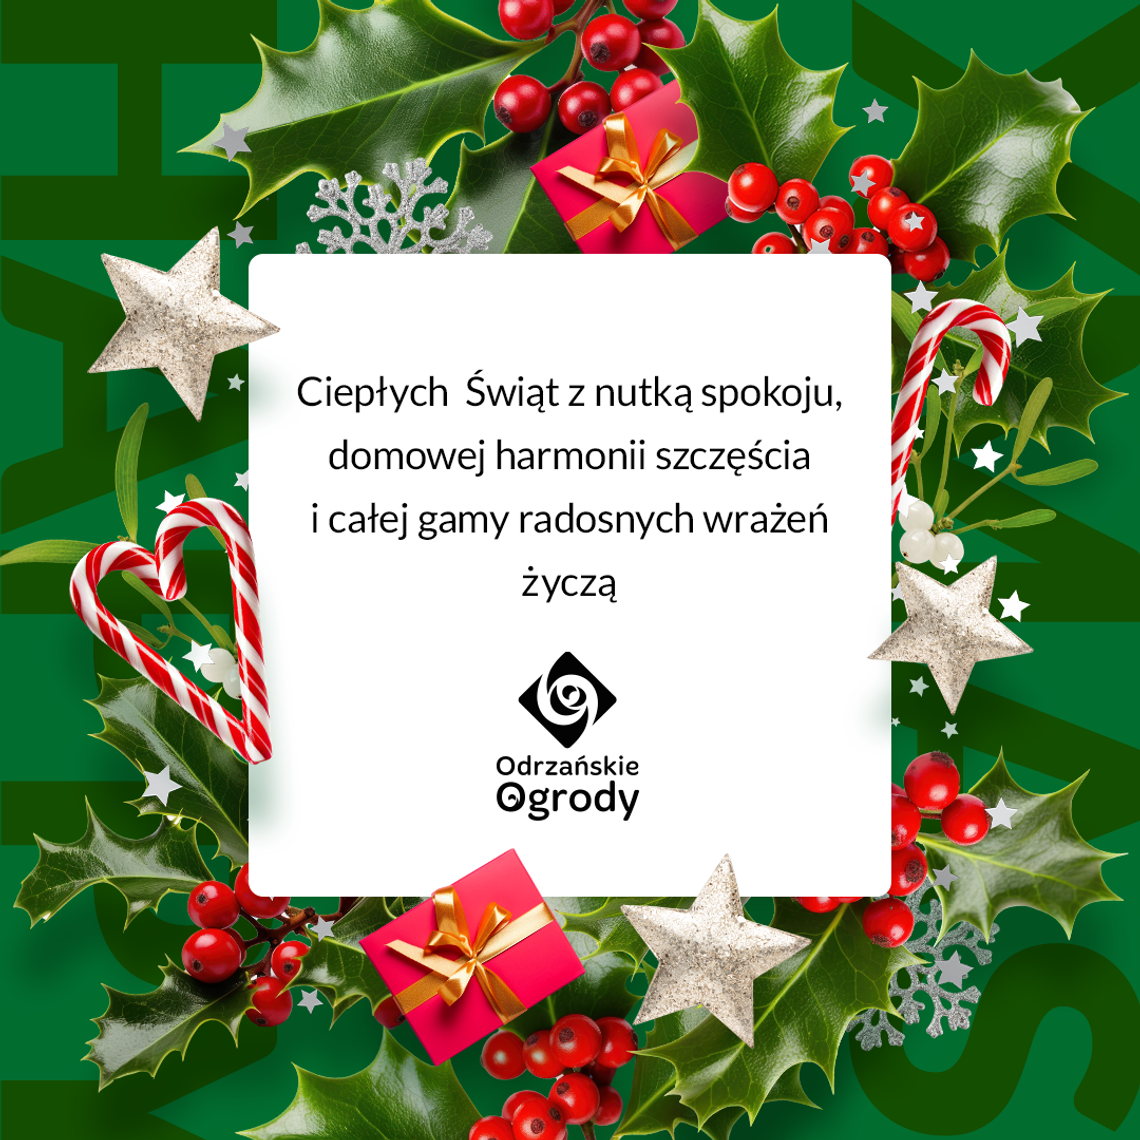 Życzenia bożonarodzeniowe i noworoczne Galerii Odrzańskie Ogrody a dla Czytelników KK24.pl